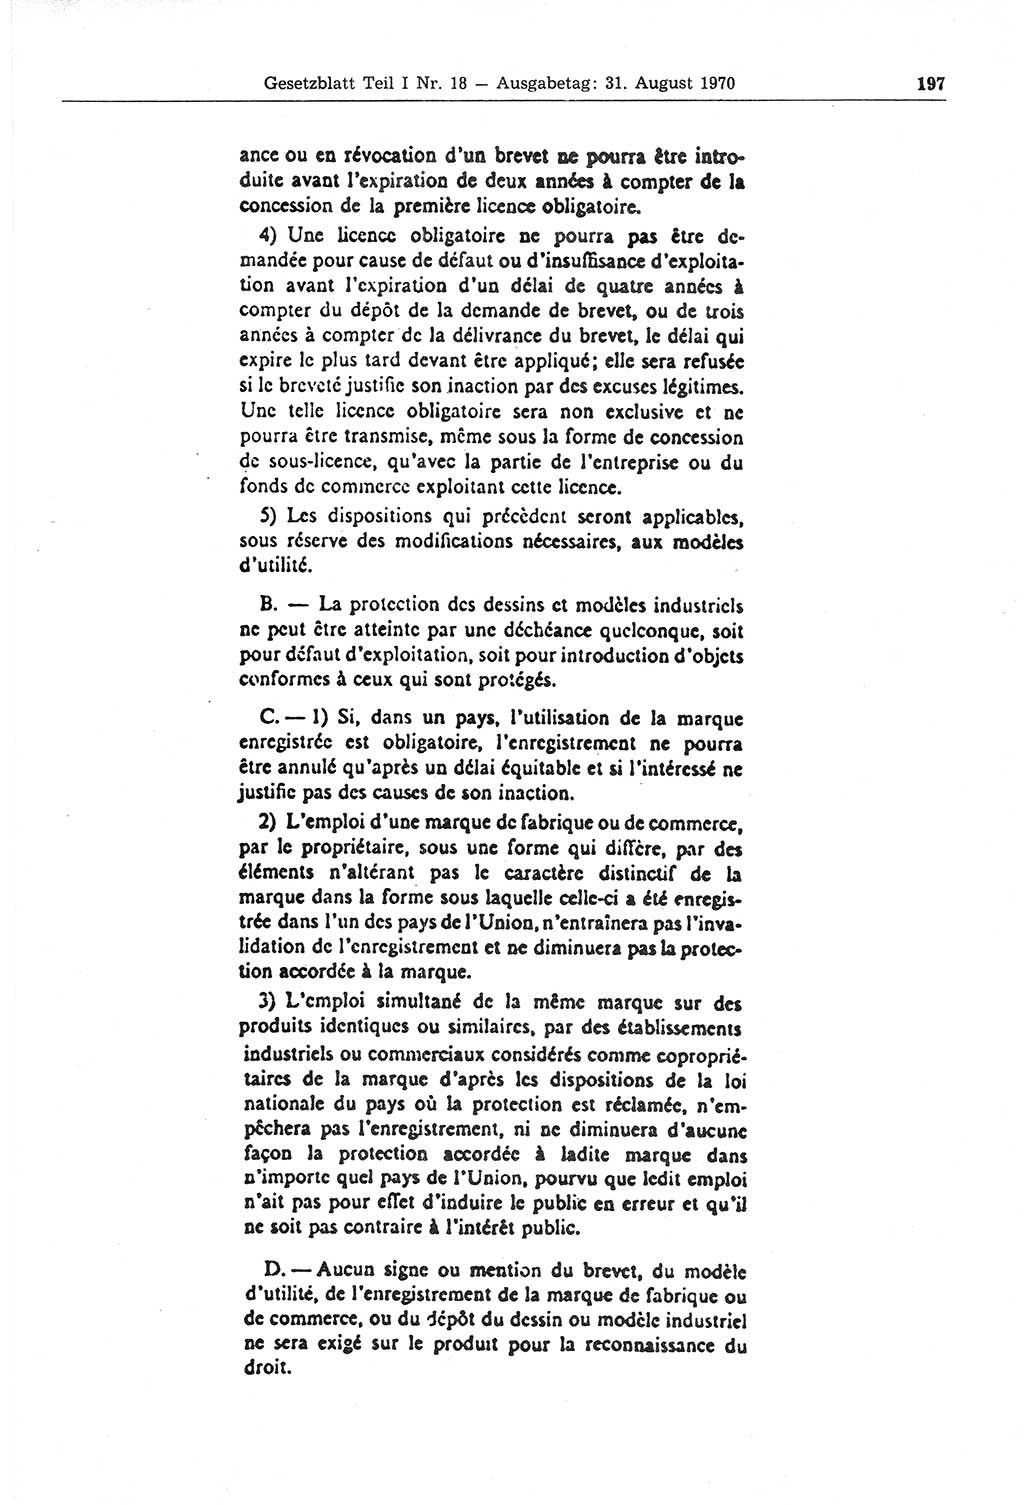 Gesetzblatt (GBl.) der Deutschen Demokratischen Republik (DDR) Teil Ⅰ 1970, Seite 197 (GBl. DDR Ⅰ 1970, S. 197)